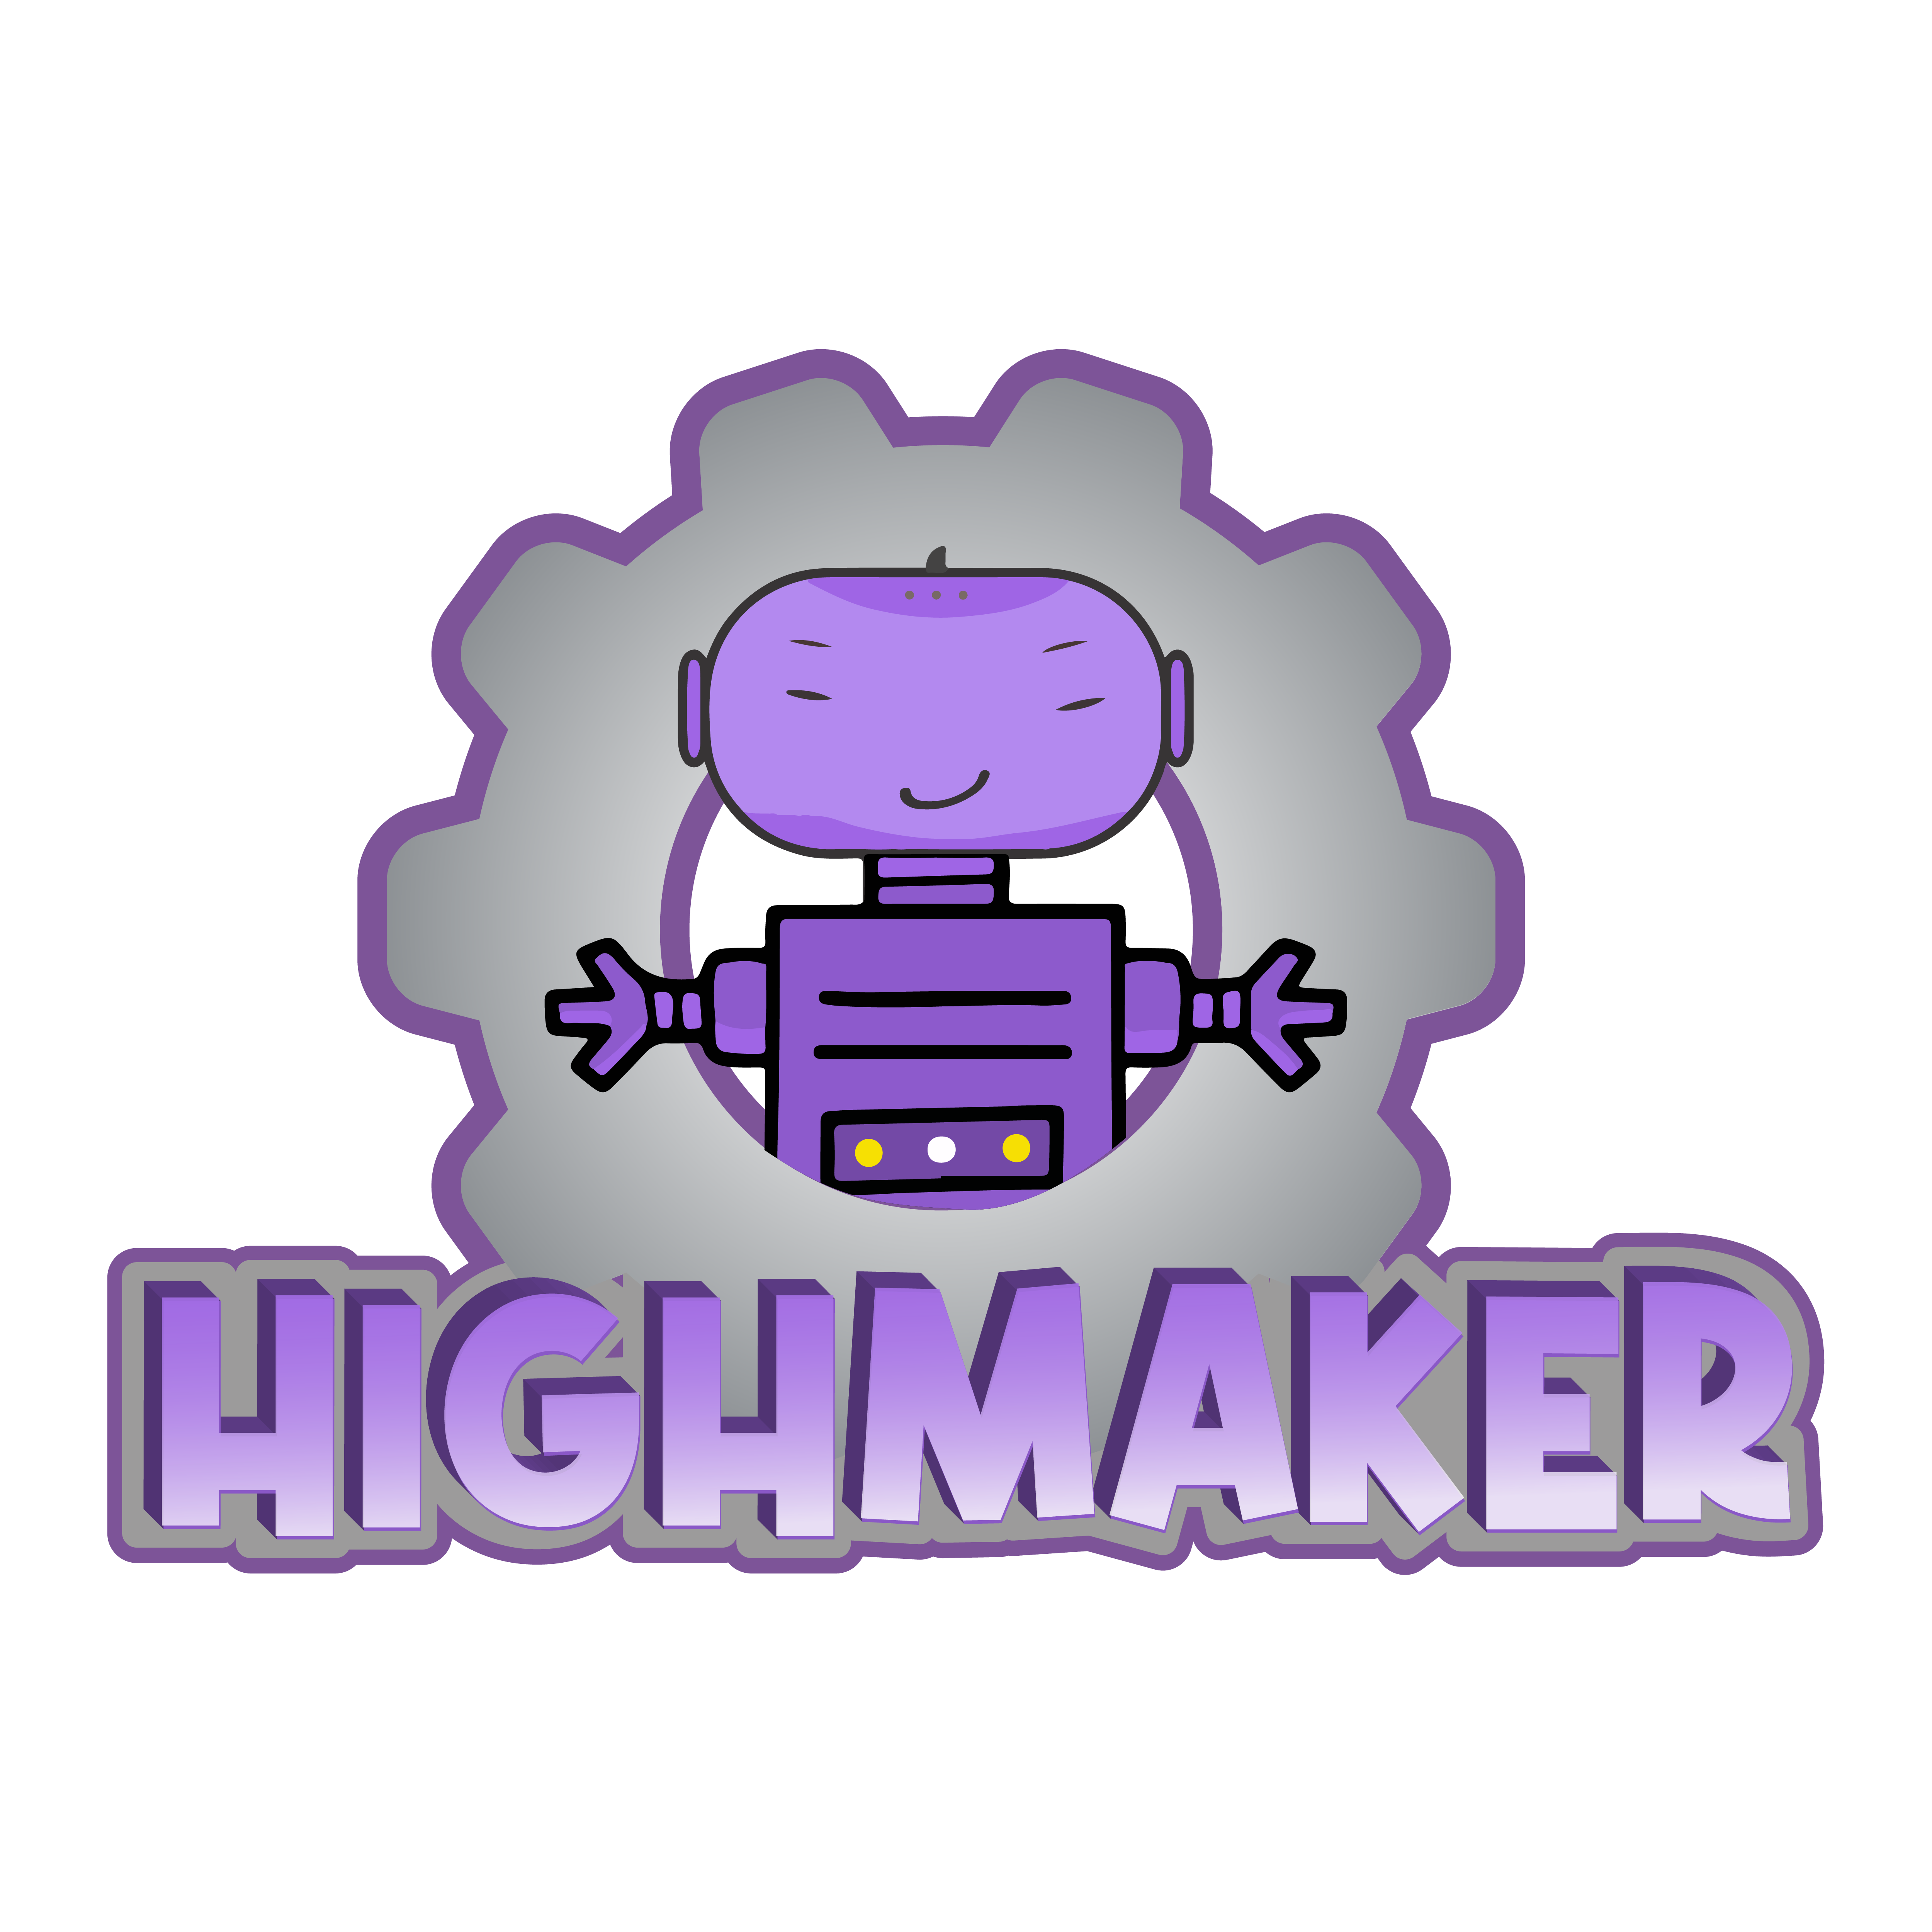  High Maker Básico